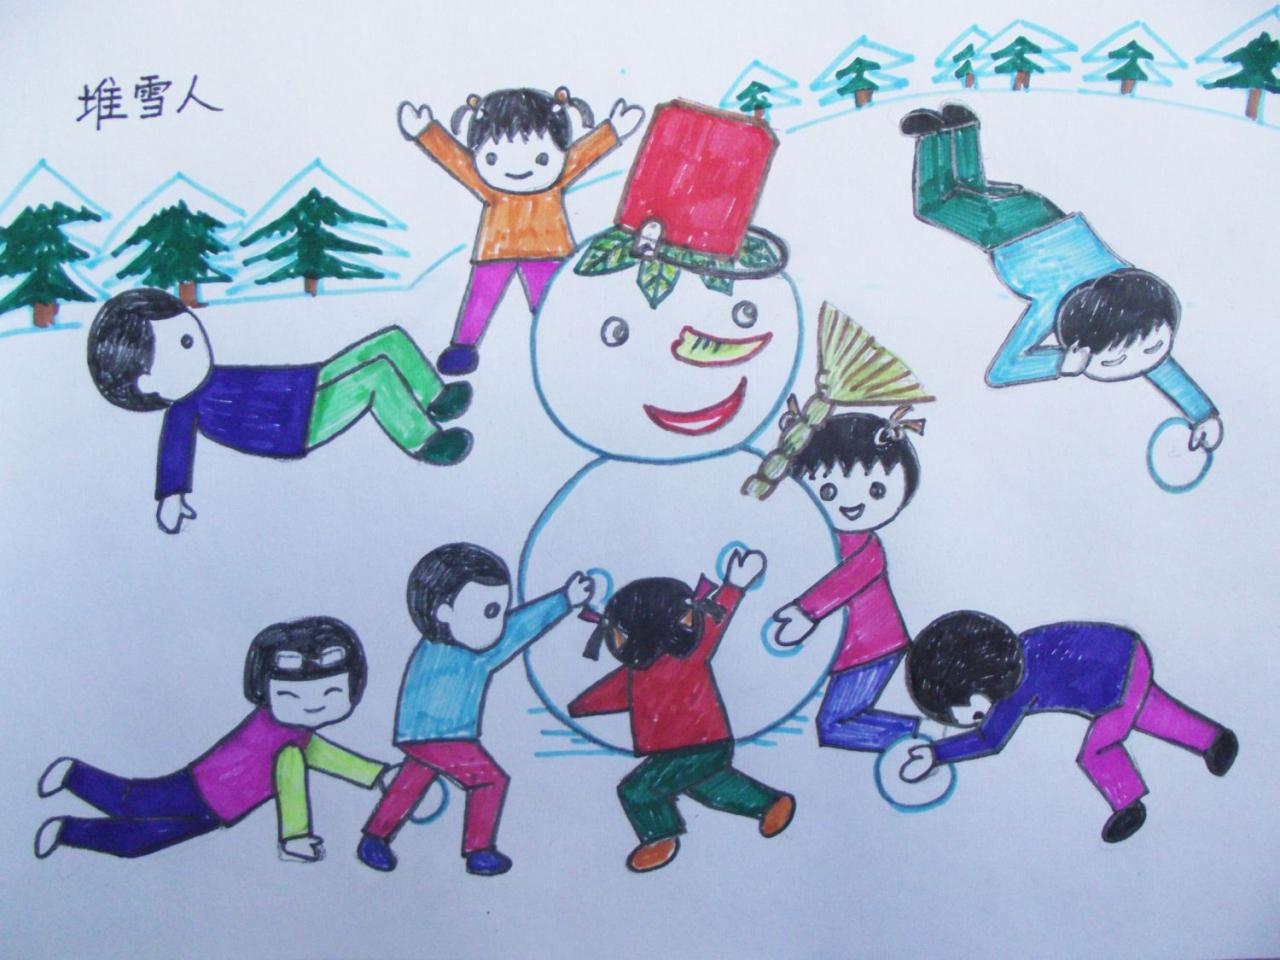 少儿学蜡笔画系列之九堆雪人情景的表现 预览图